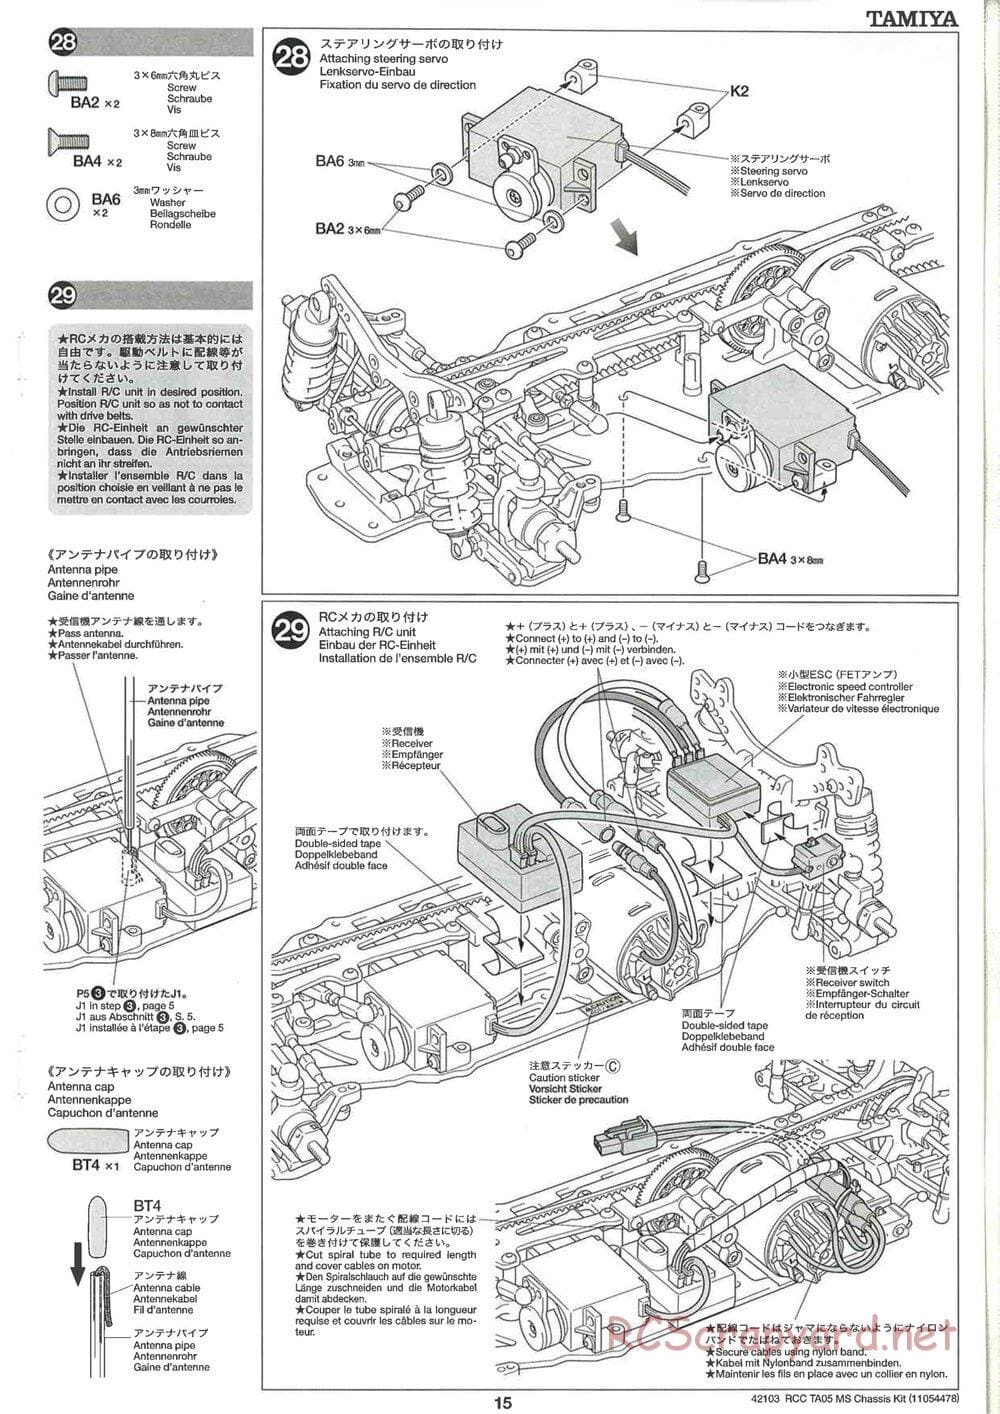 Tamiya - TA05 MS Chassis - Manual - Page 15